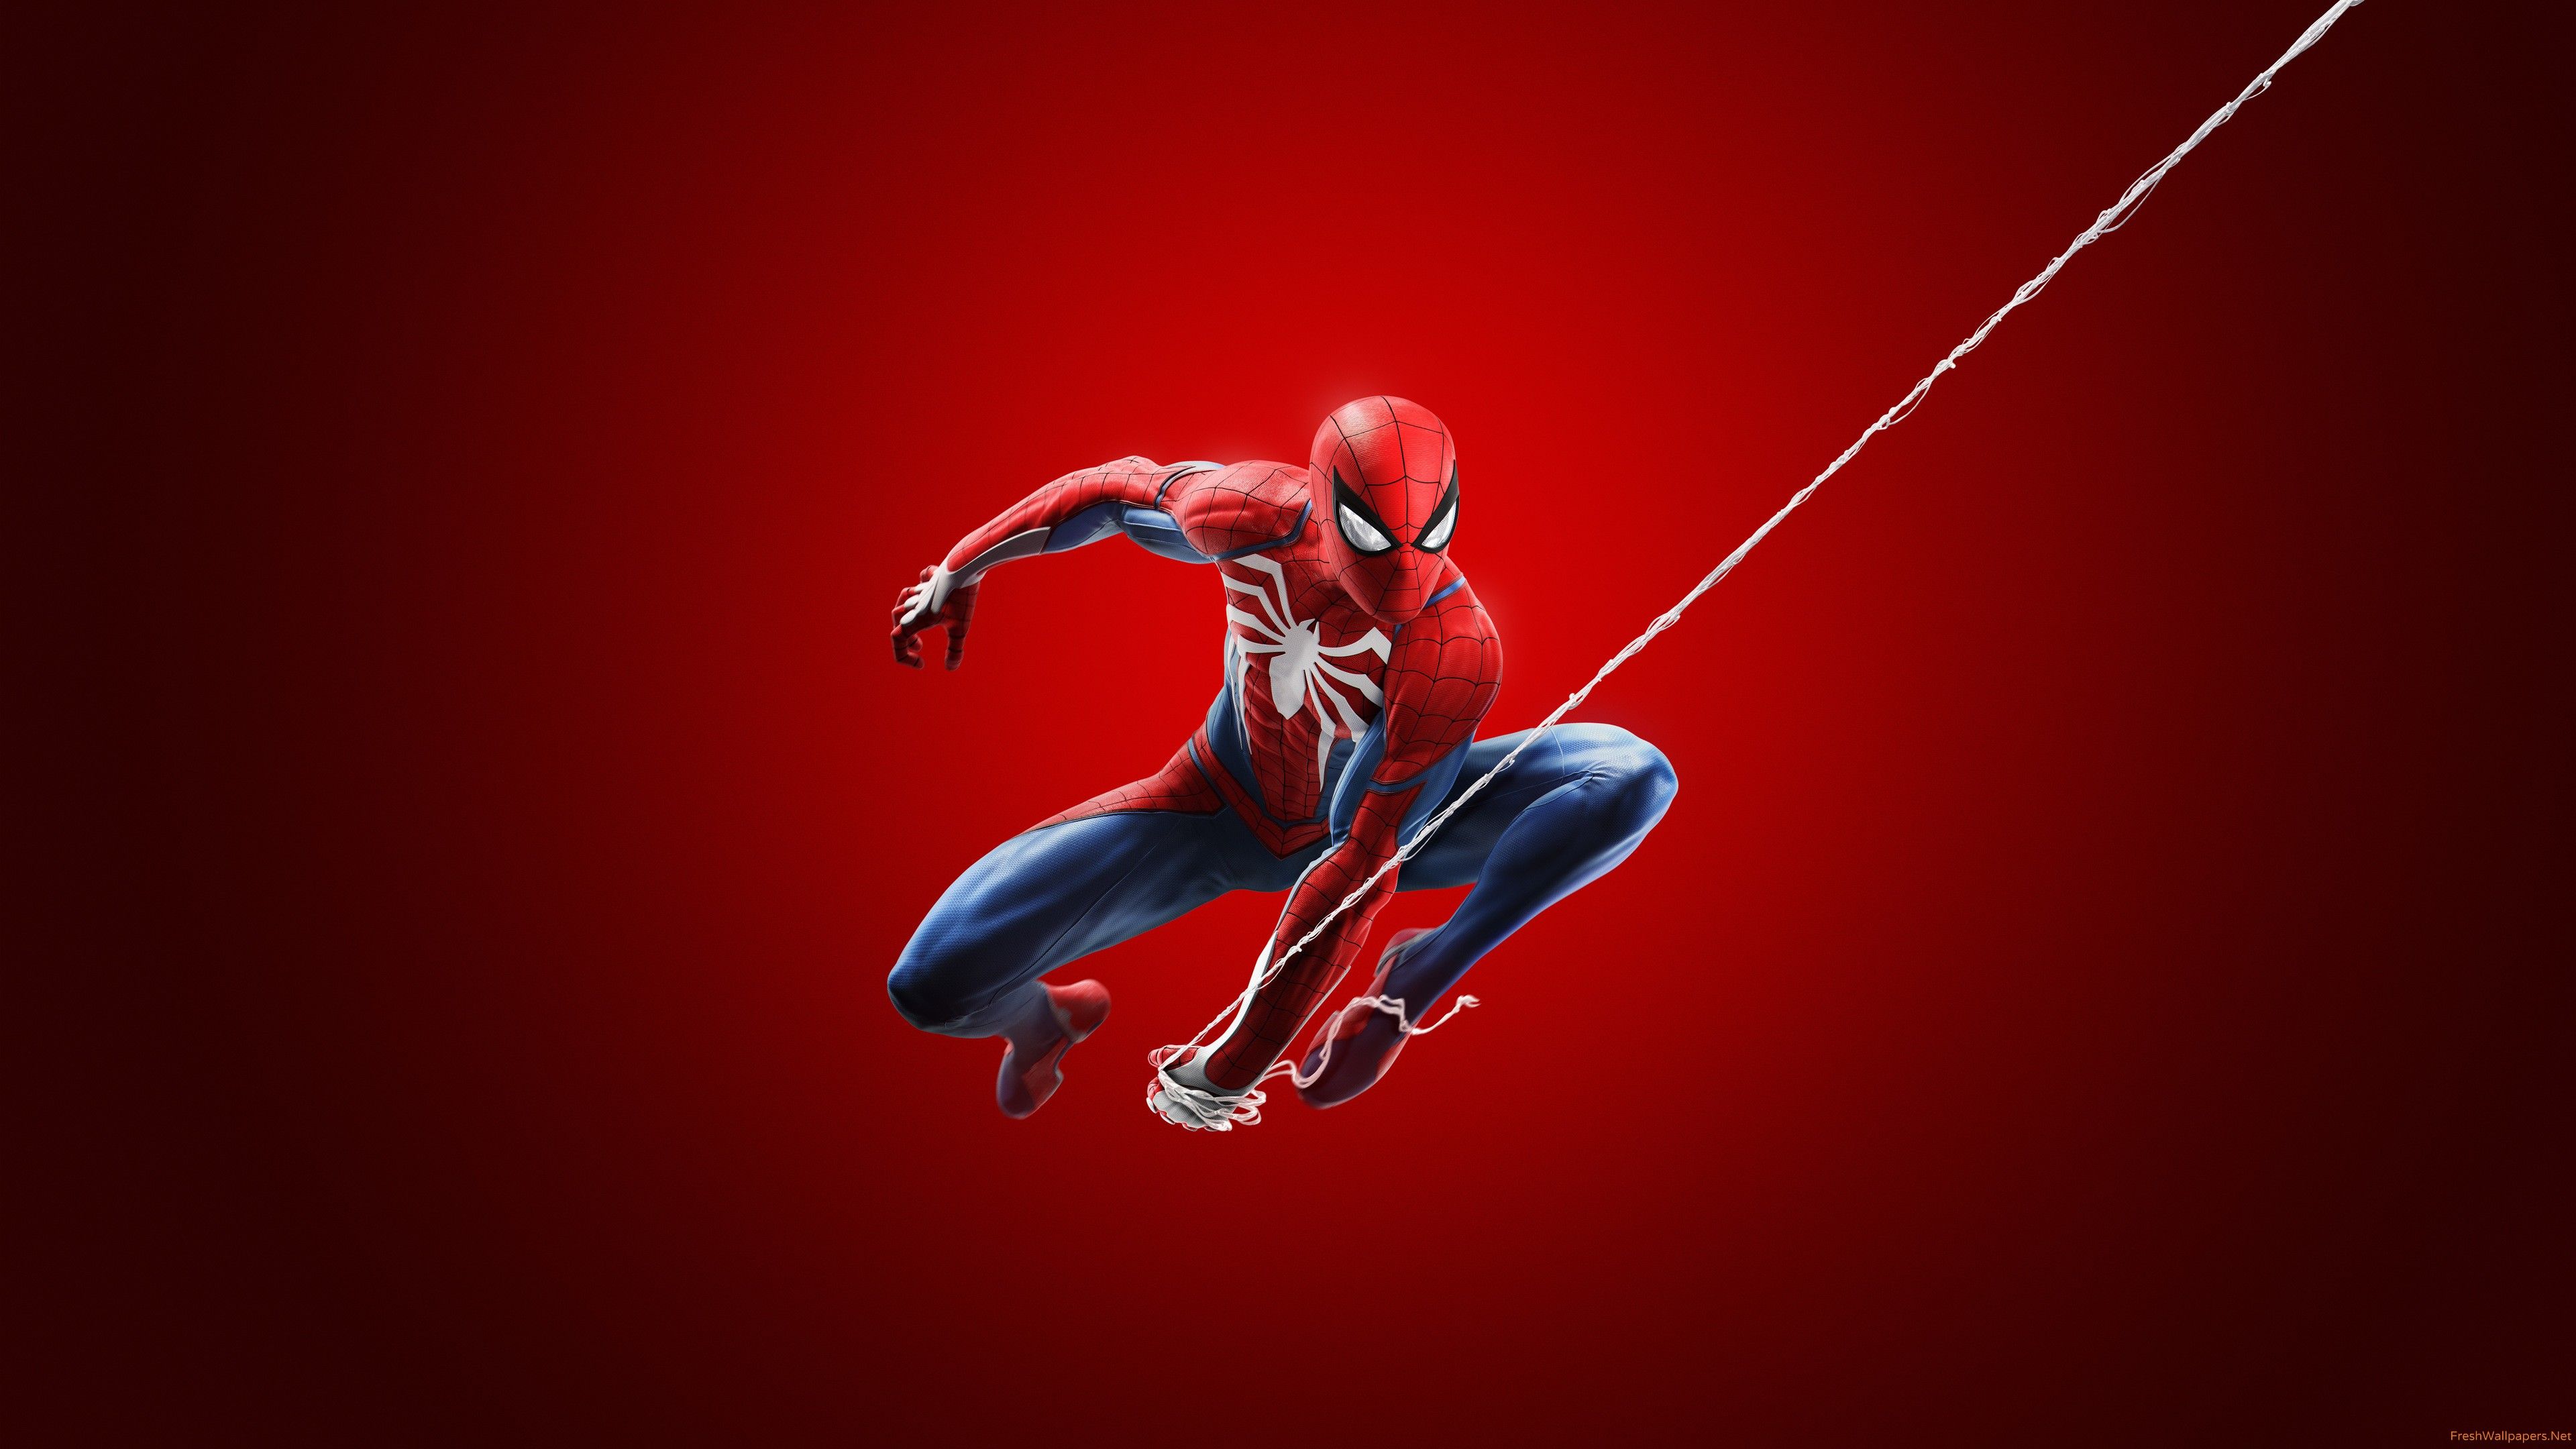 Spiderman Ps4 fondos de pantalla | Papeles pintados frescos